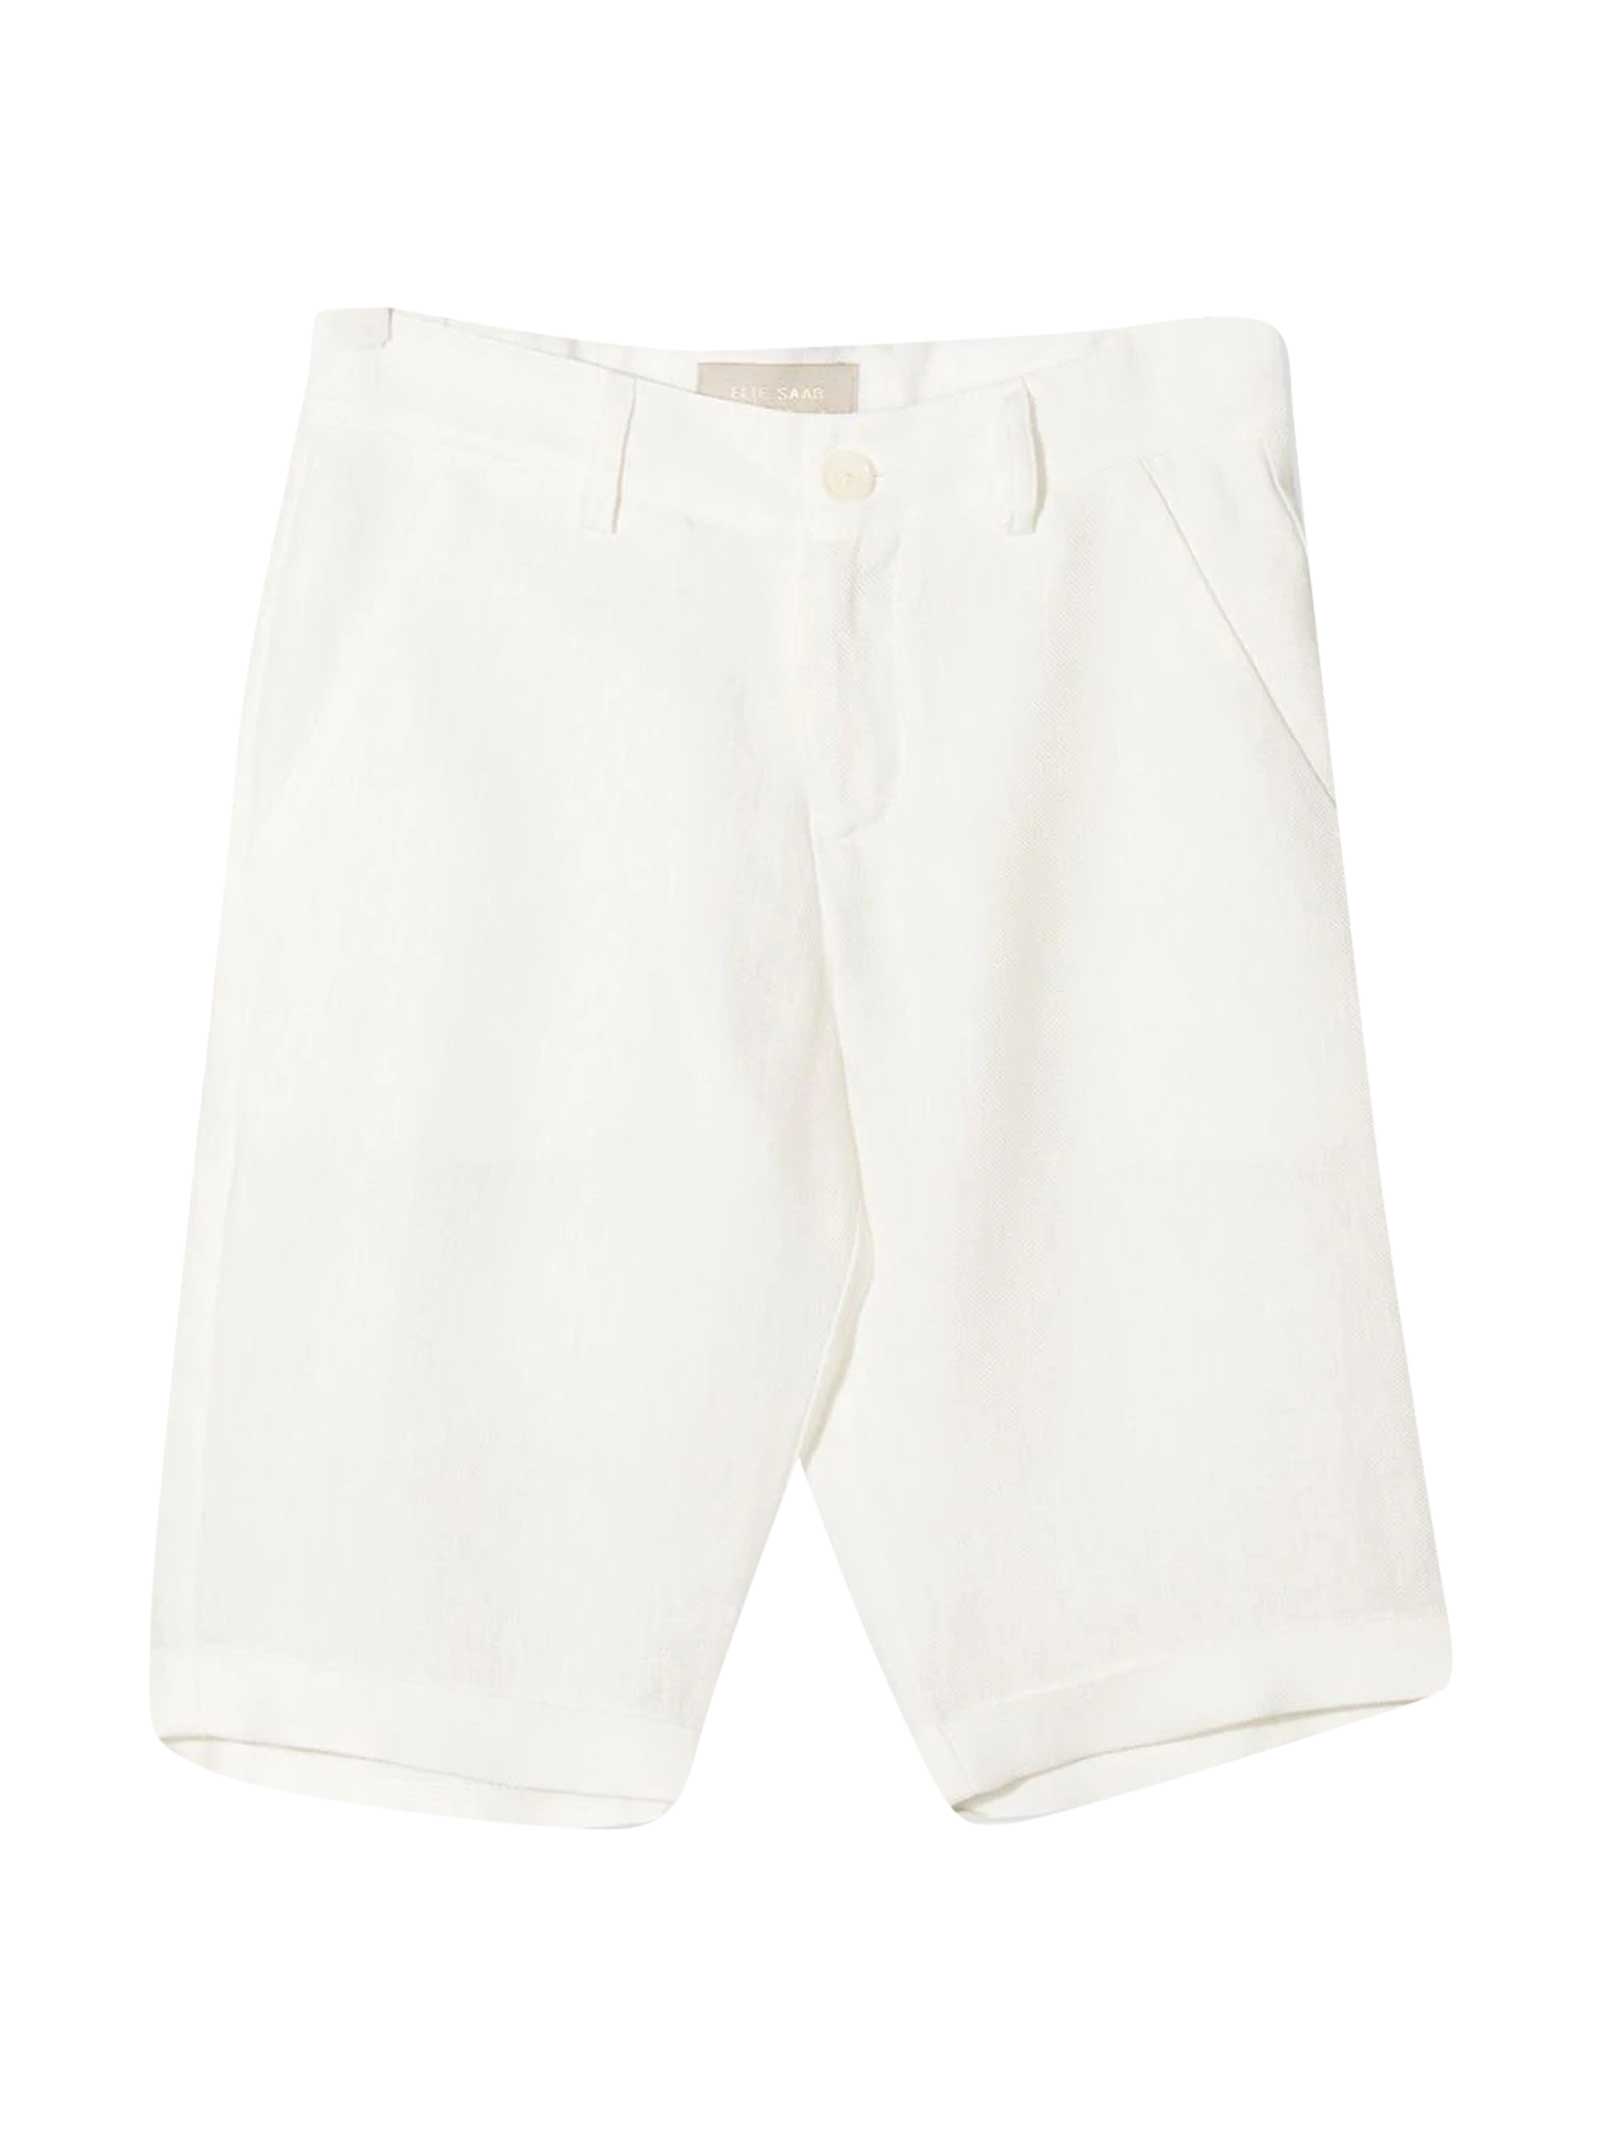 Elie Saab White Shorts